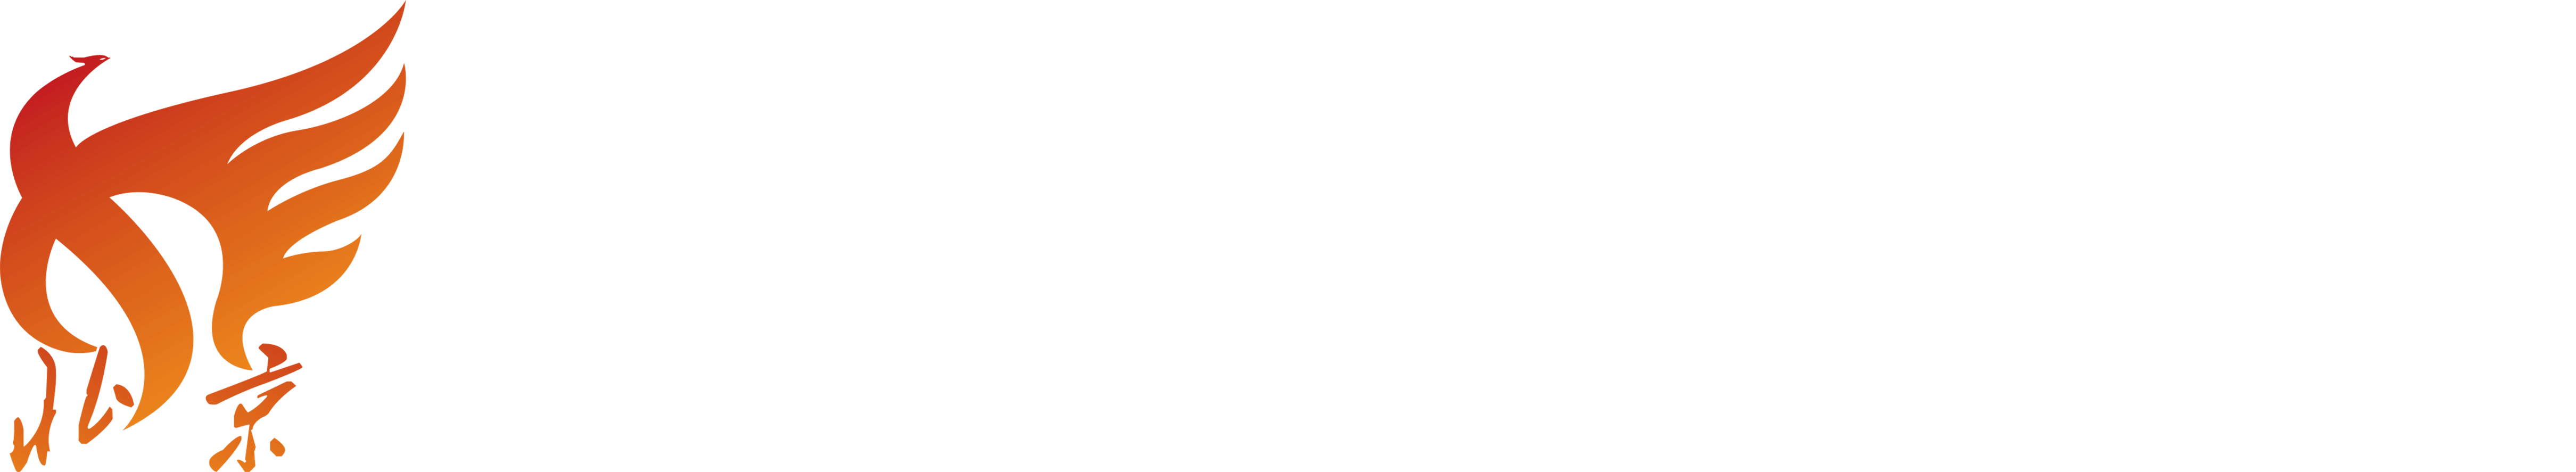 北京市中小企业公共服务平台